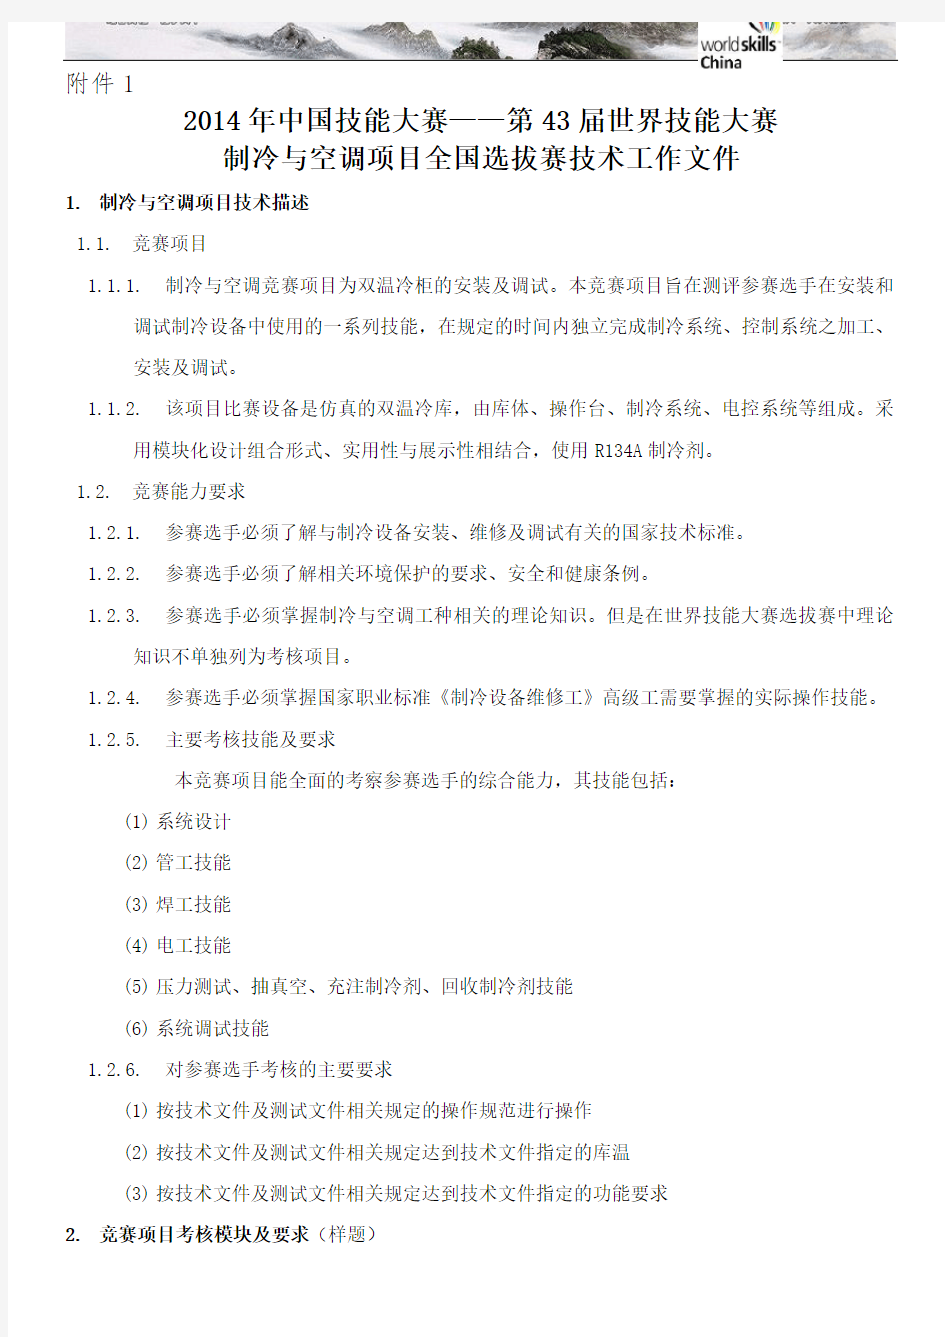 中国技能大赛 第 届世界技能大赛制冷与空调项目全国选拔赛技术工作文件